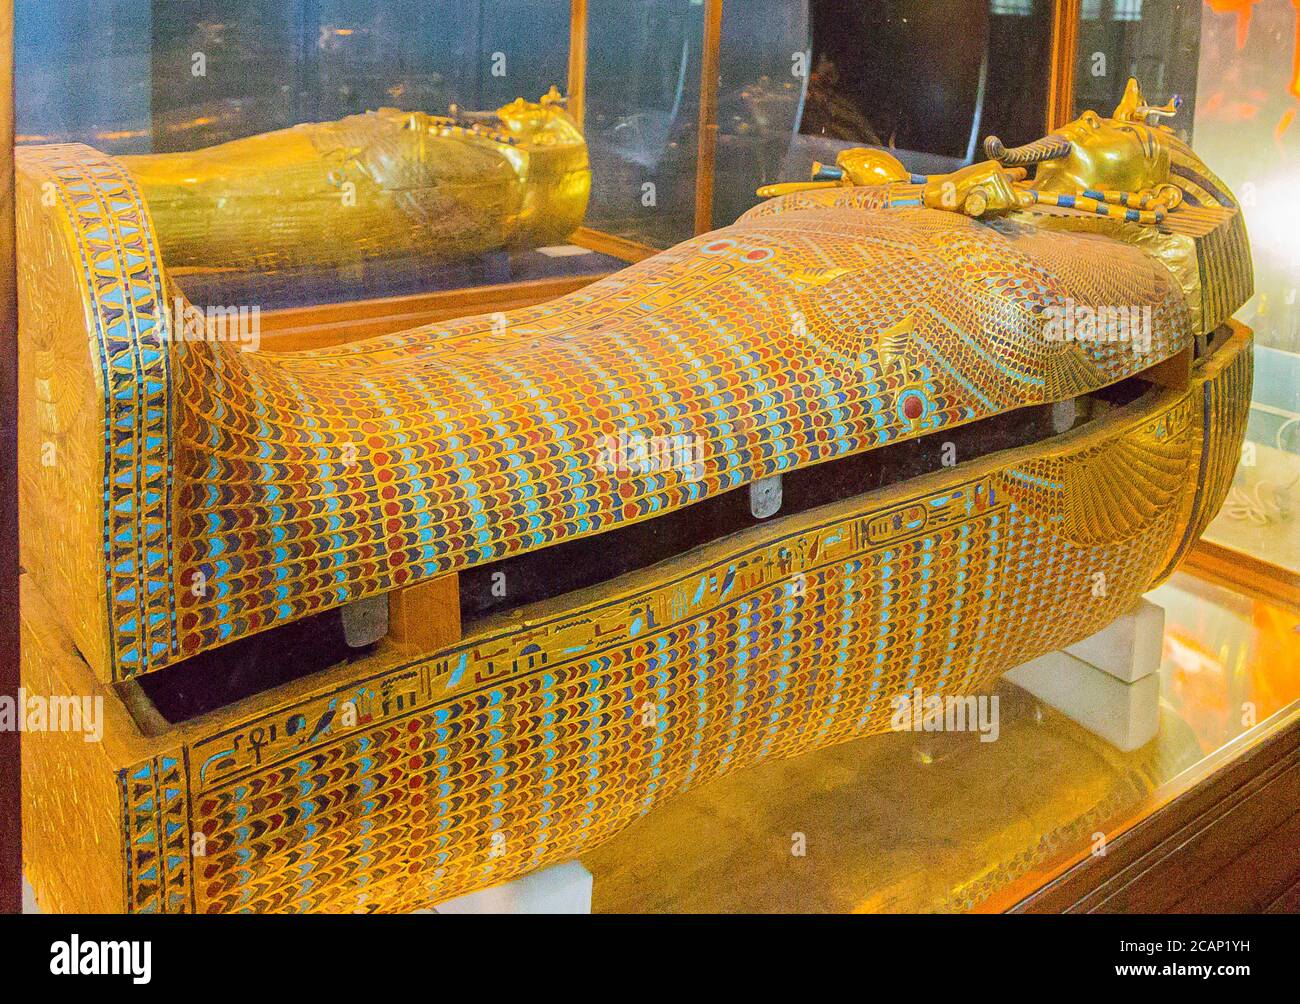 Egypte, bijoux Toutankhamon, de son tombeau à Louxor : le deuxième cercueil, recouvert de plumes, rappelant le type de cercueil Rishi. Banque D'Images